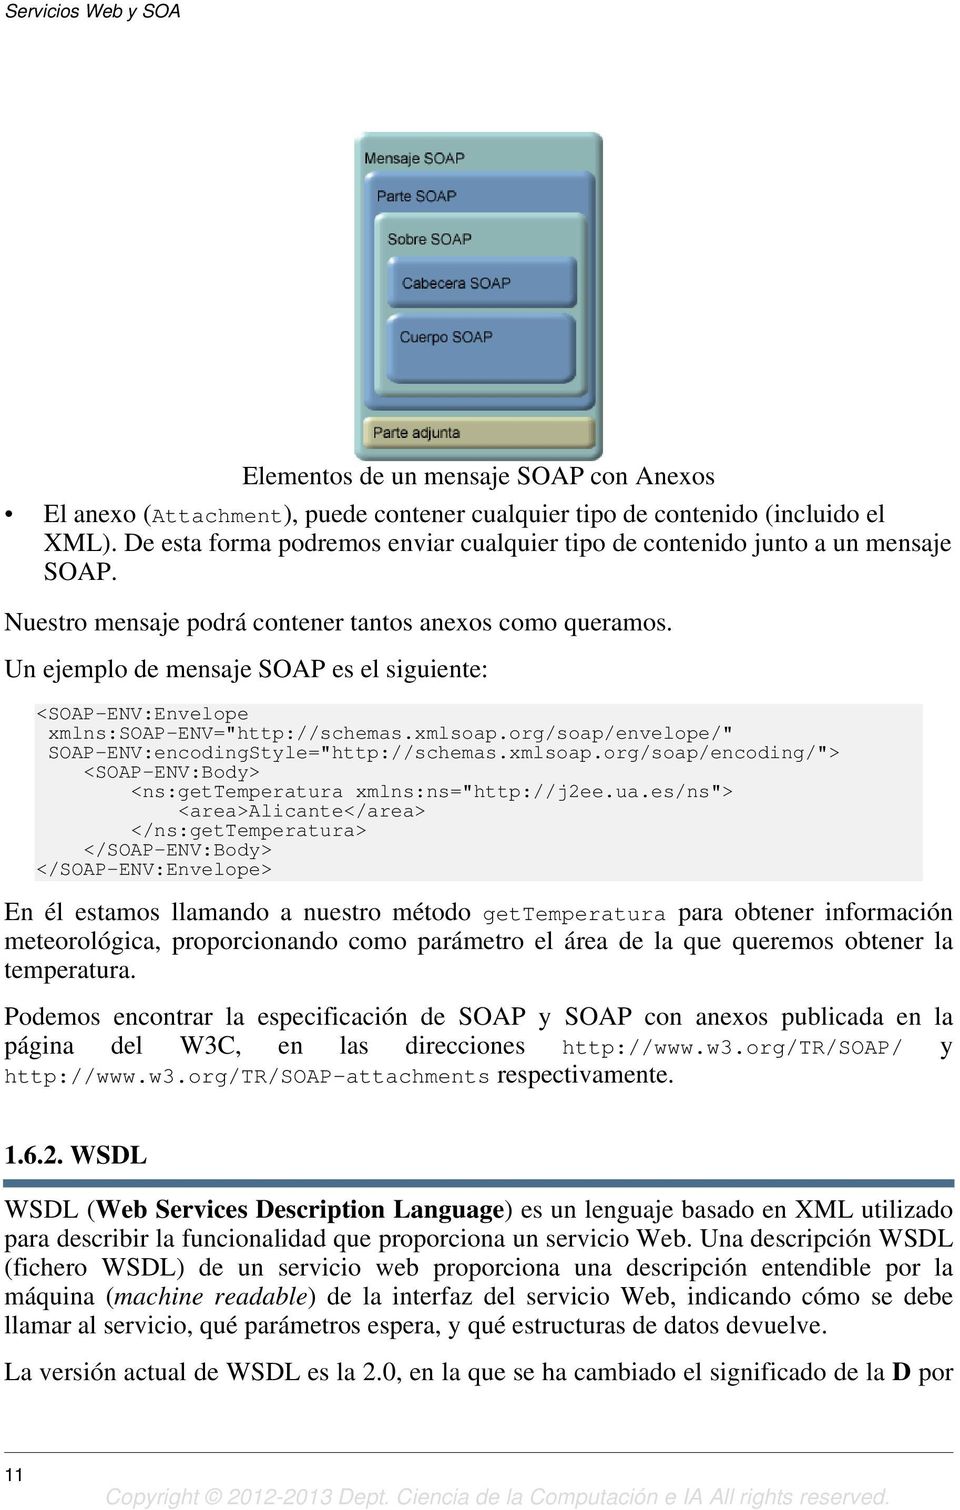 Un ejemplo de mensaje SOAP es el siguiente: <SOAP-ENV:Envelope xmlns:soap-env="http://schemas.xmlsoap.org/soap/envelope/" SOAP-ENV:encodingStyle="http://schemas.xmlsoap.org/soap/encoding/"> <SOAP-ENV:Body> <ns:gettemperatura xmlns:ns="http://j2ee.